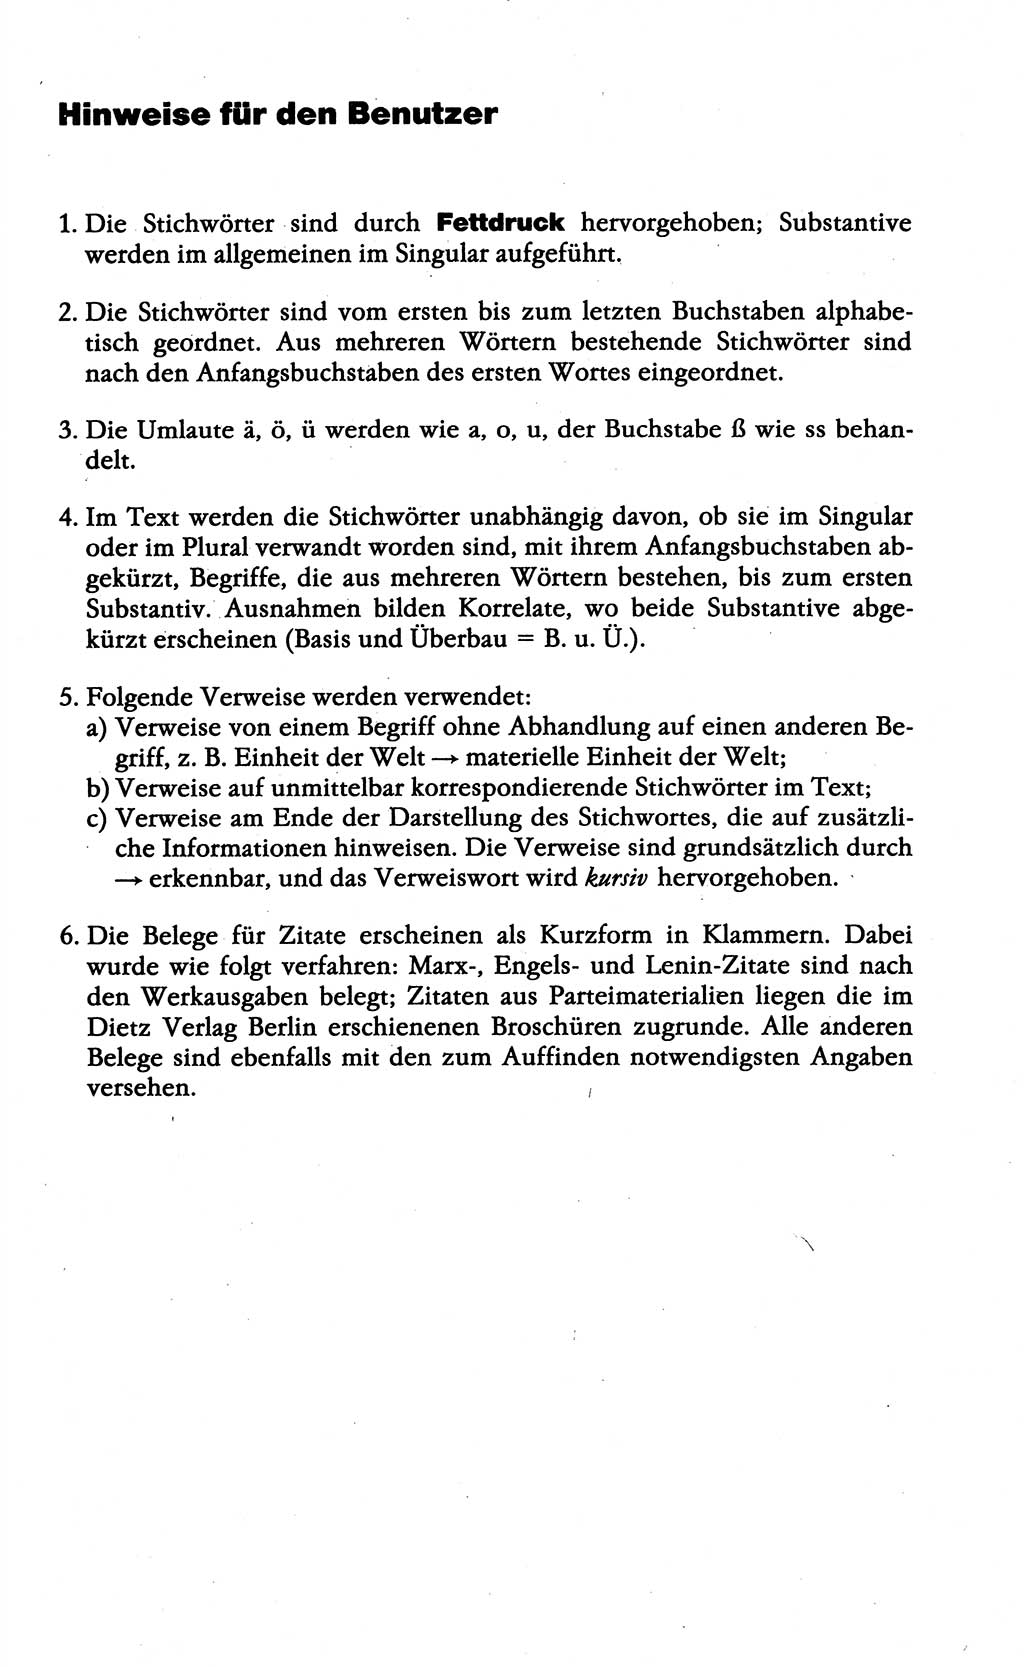 Wörterbuch der marxistisch-leninistischen Philosophie [Deutsche Demokratische Republik (DDR)] 1985, Seite 9 (Wb. ML Phil. DDR 1985, S. 9)